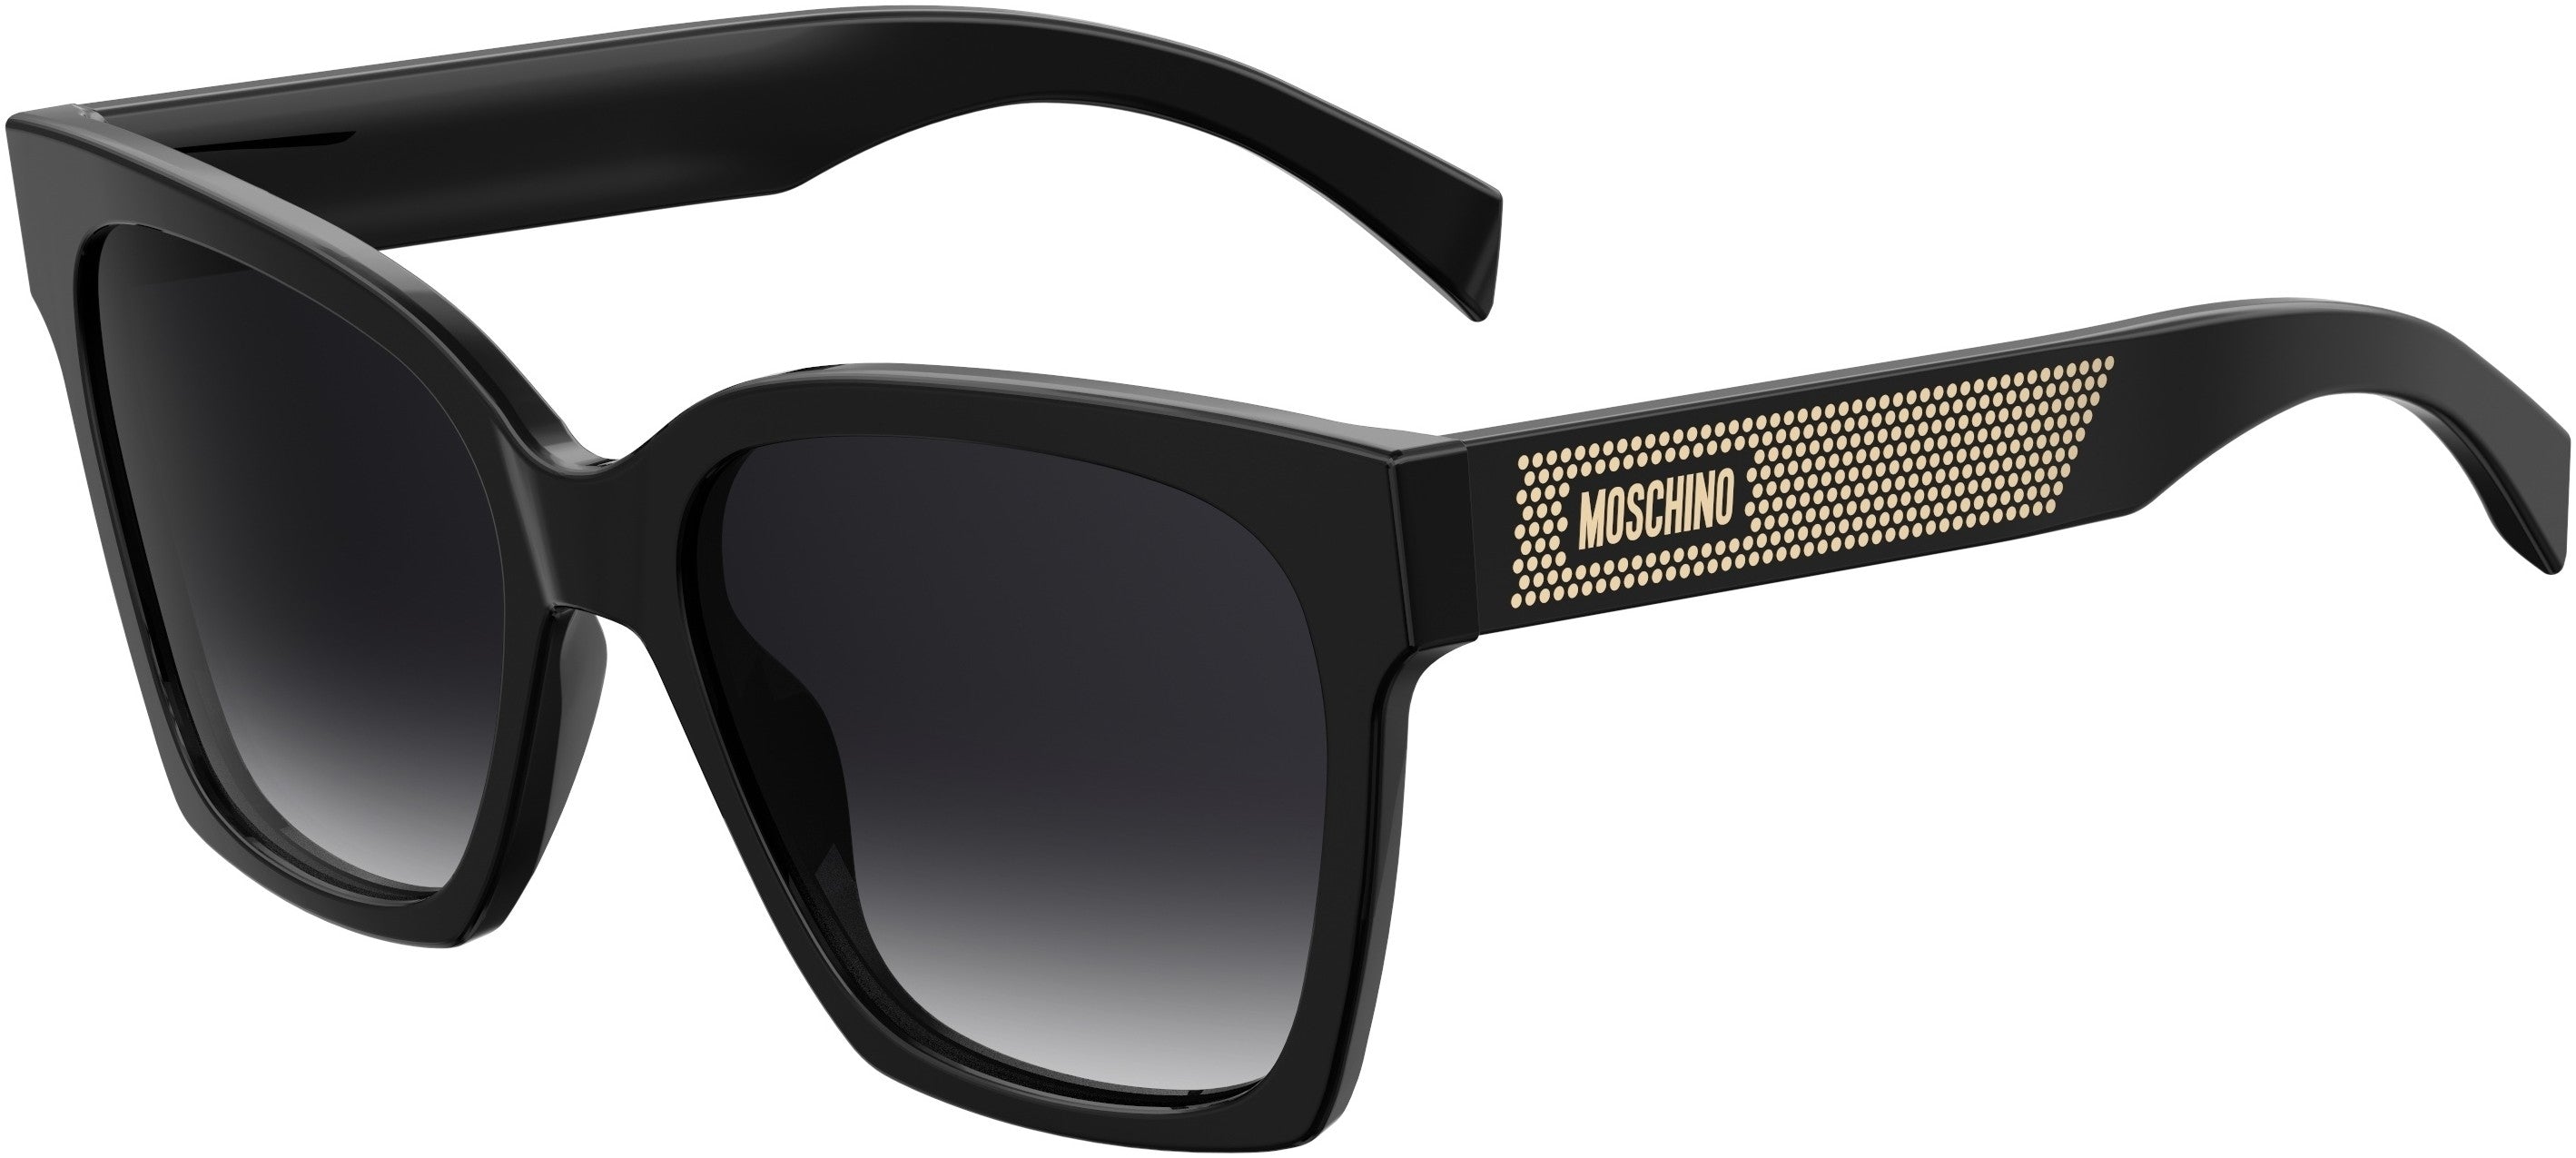  Moschino 015/S Square Sunglasses 0807-0807  Black (9O Dark Gray Gradient)